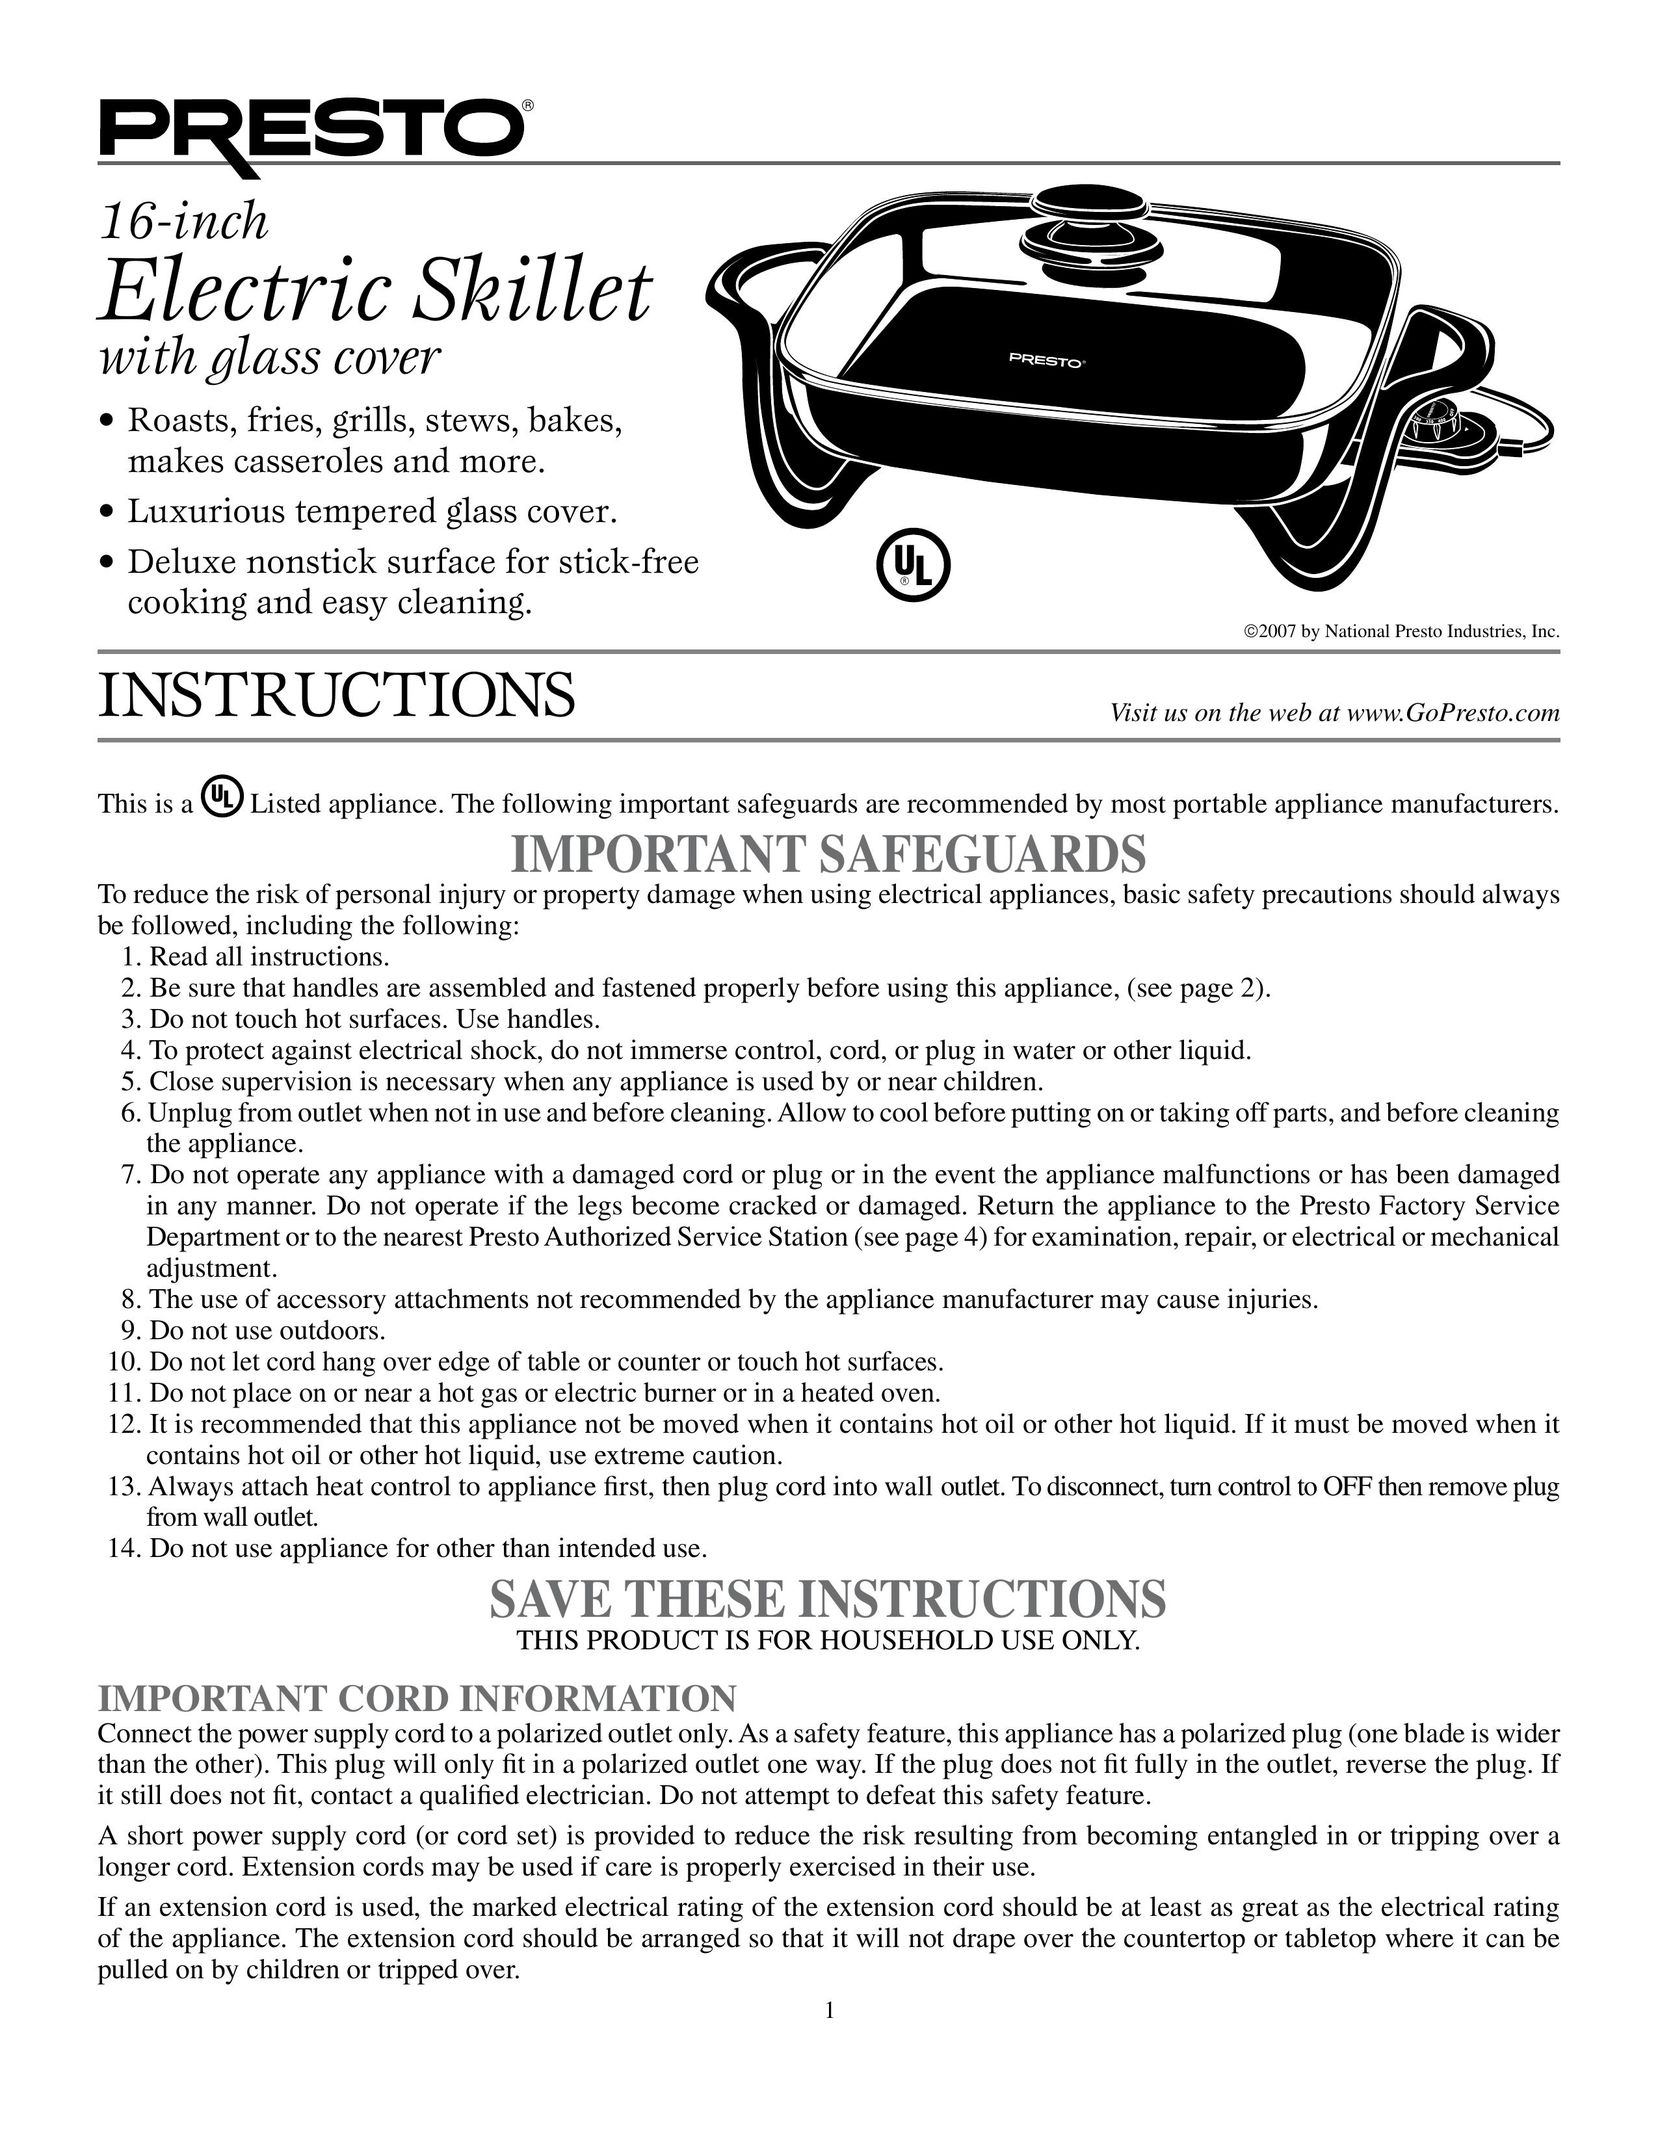 Presto 16-inch Electric Skillet Fryer User Manual